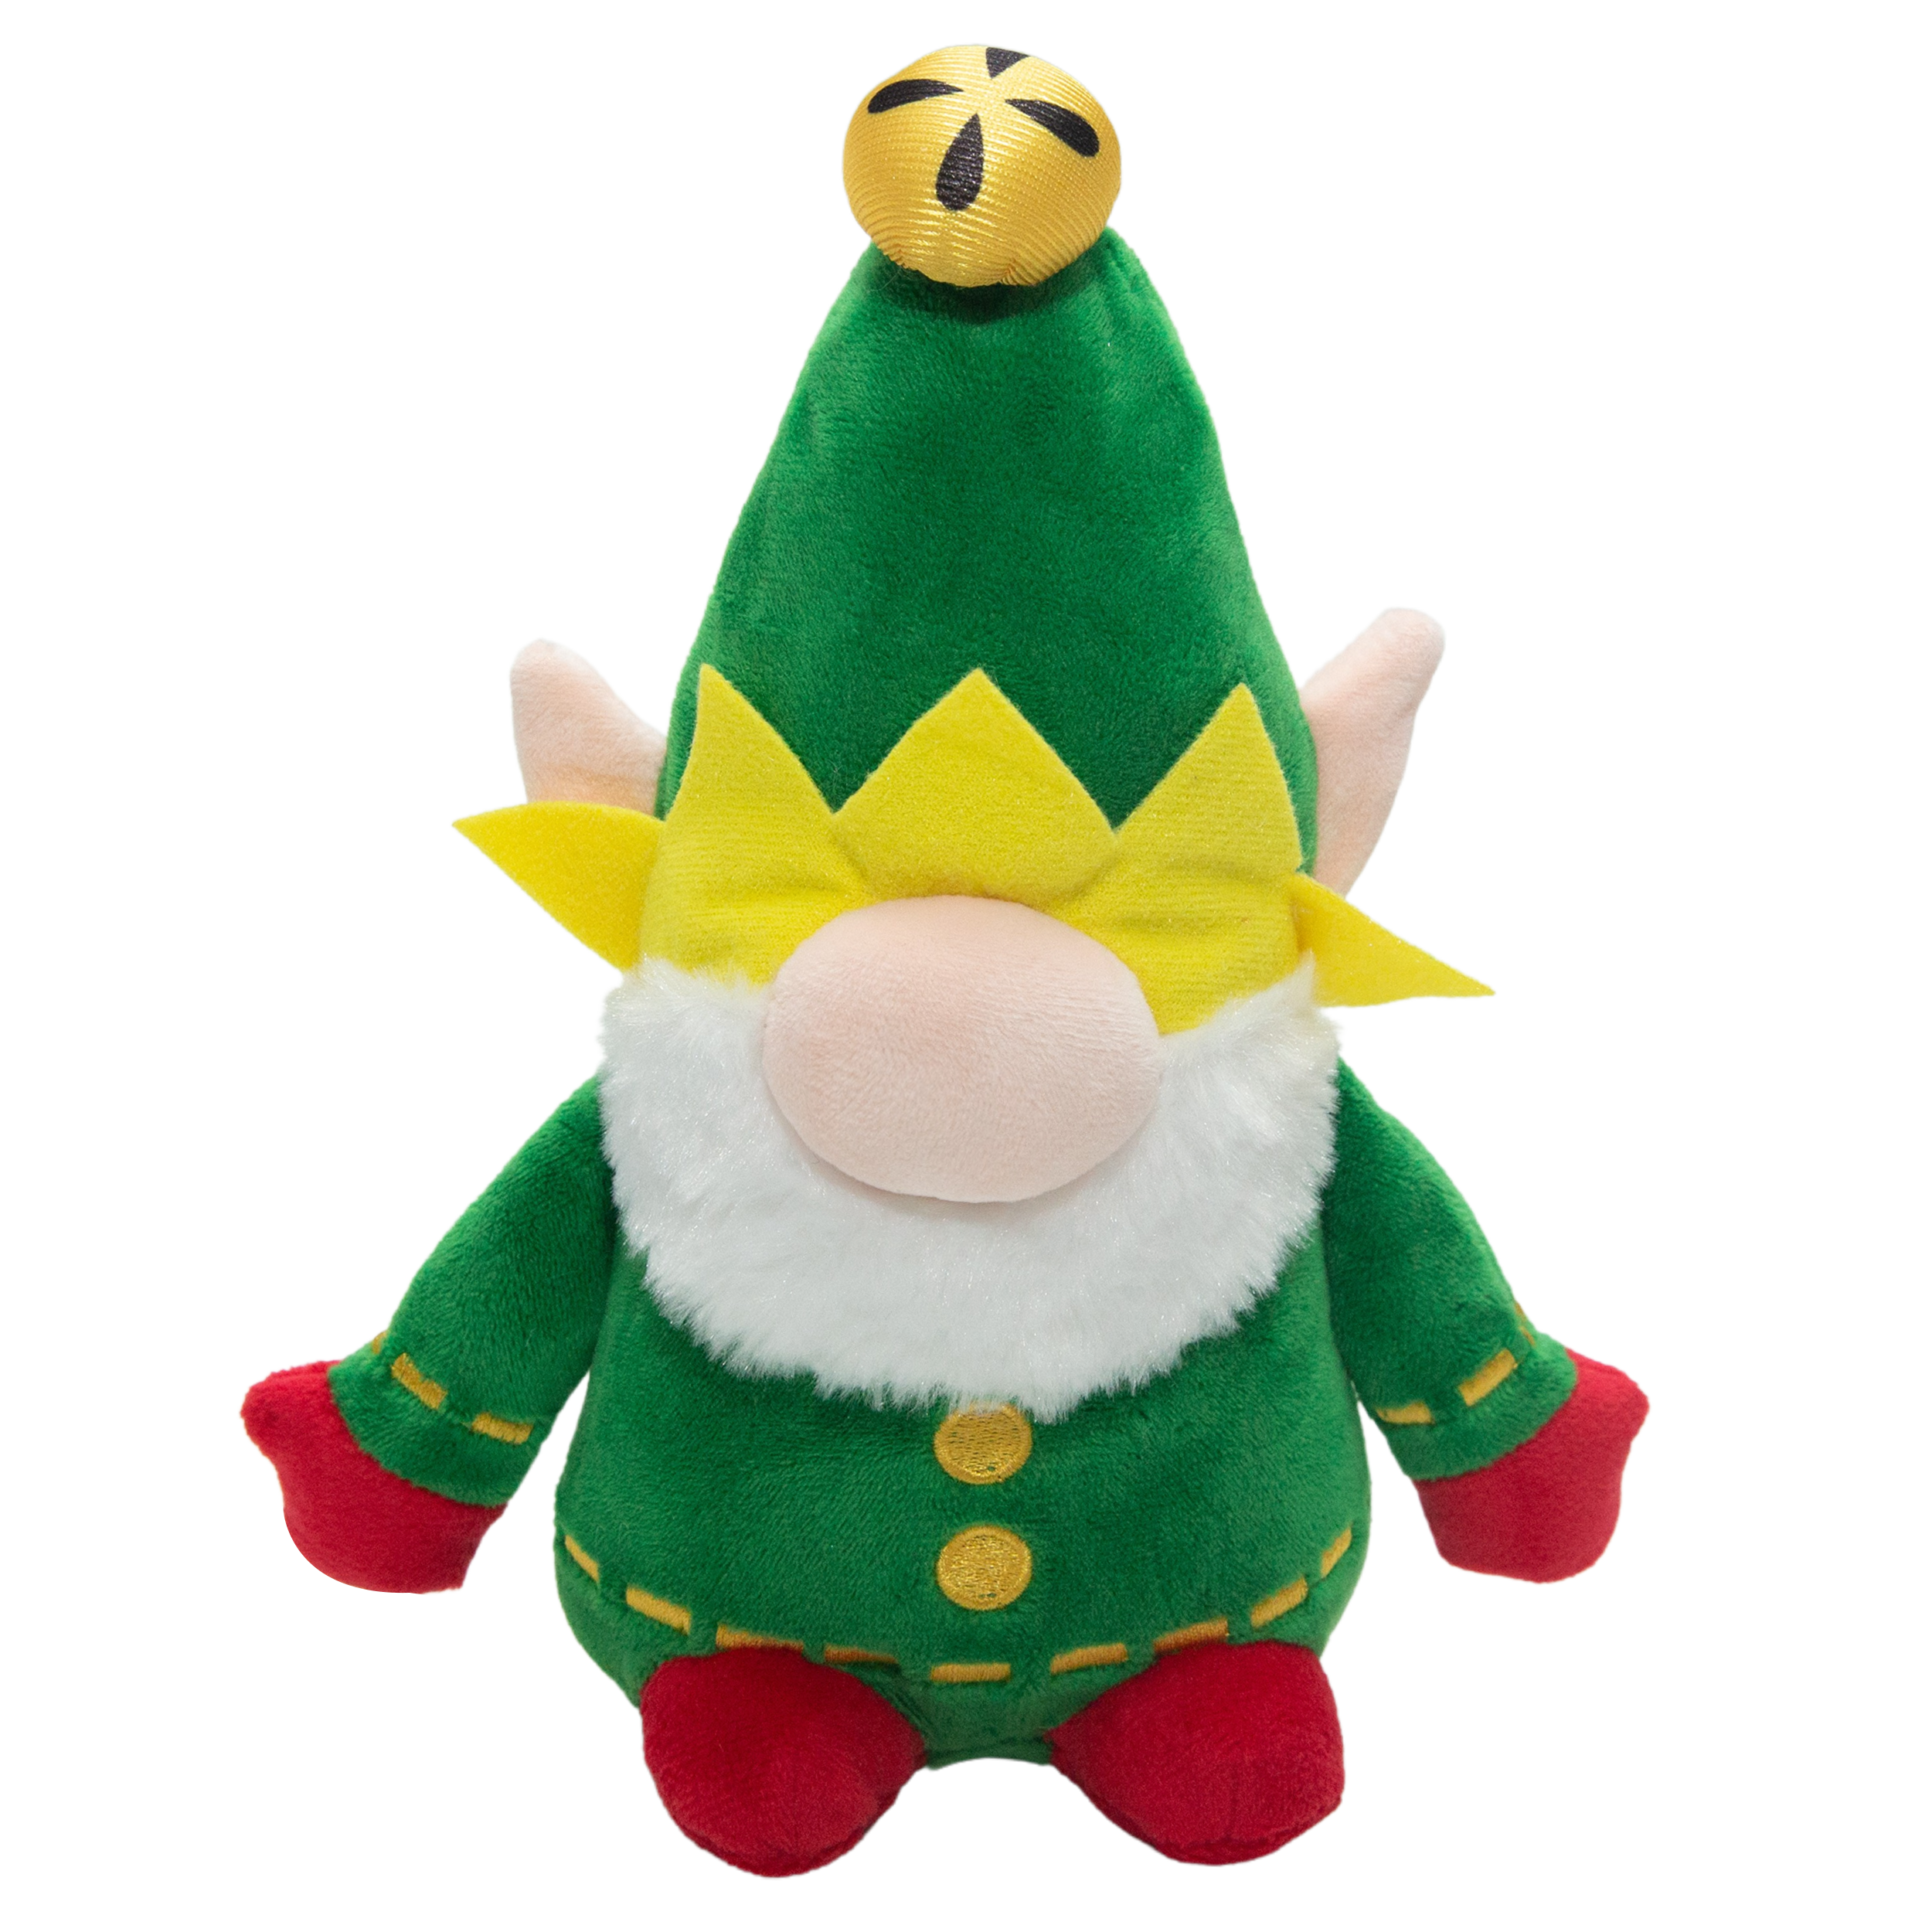 Elf the Gnome